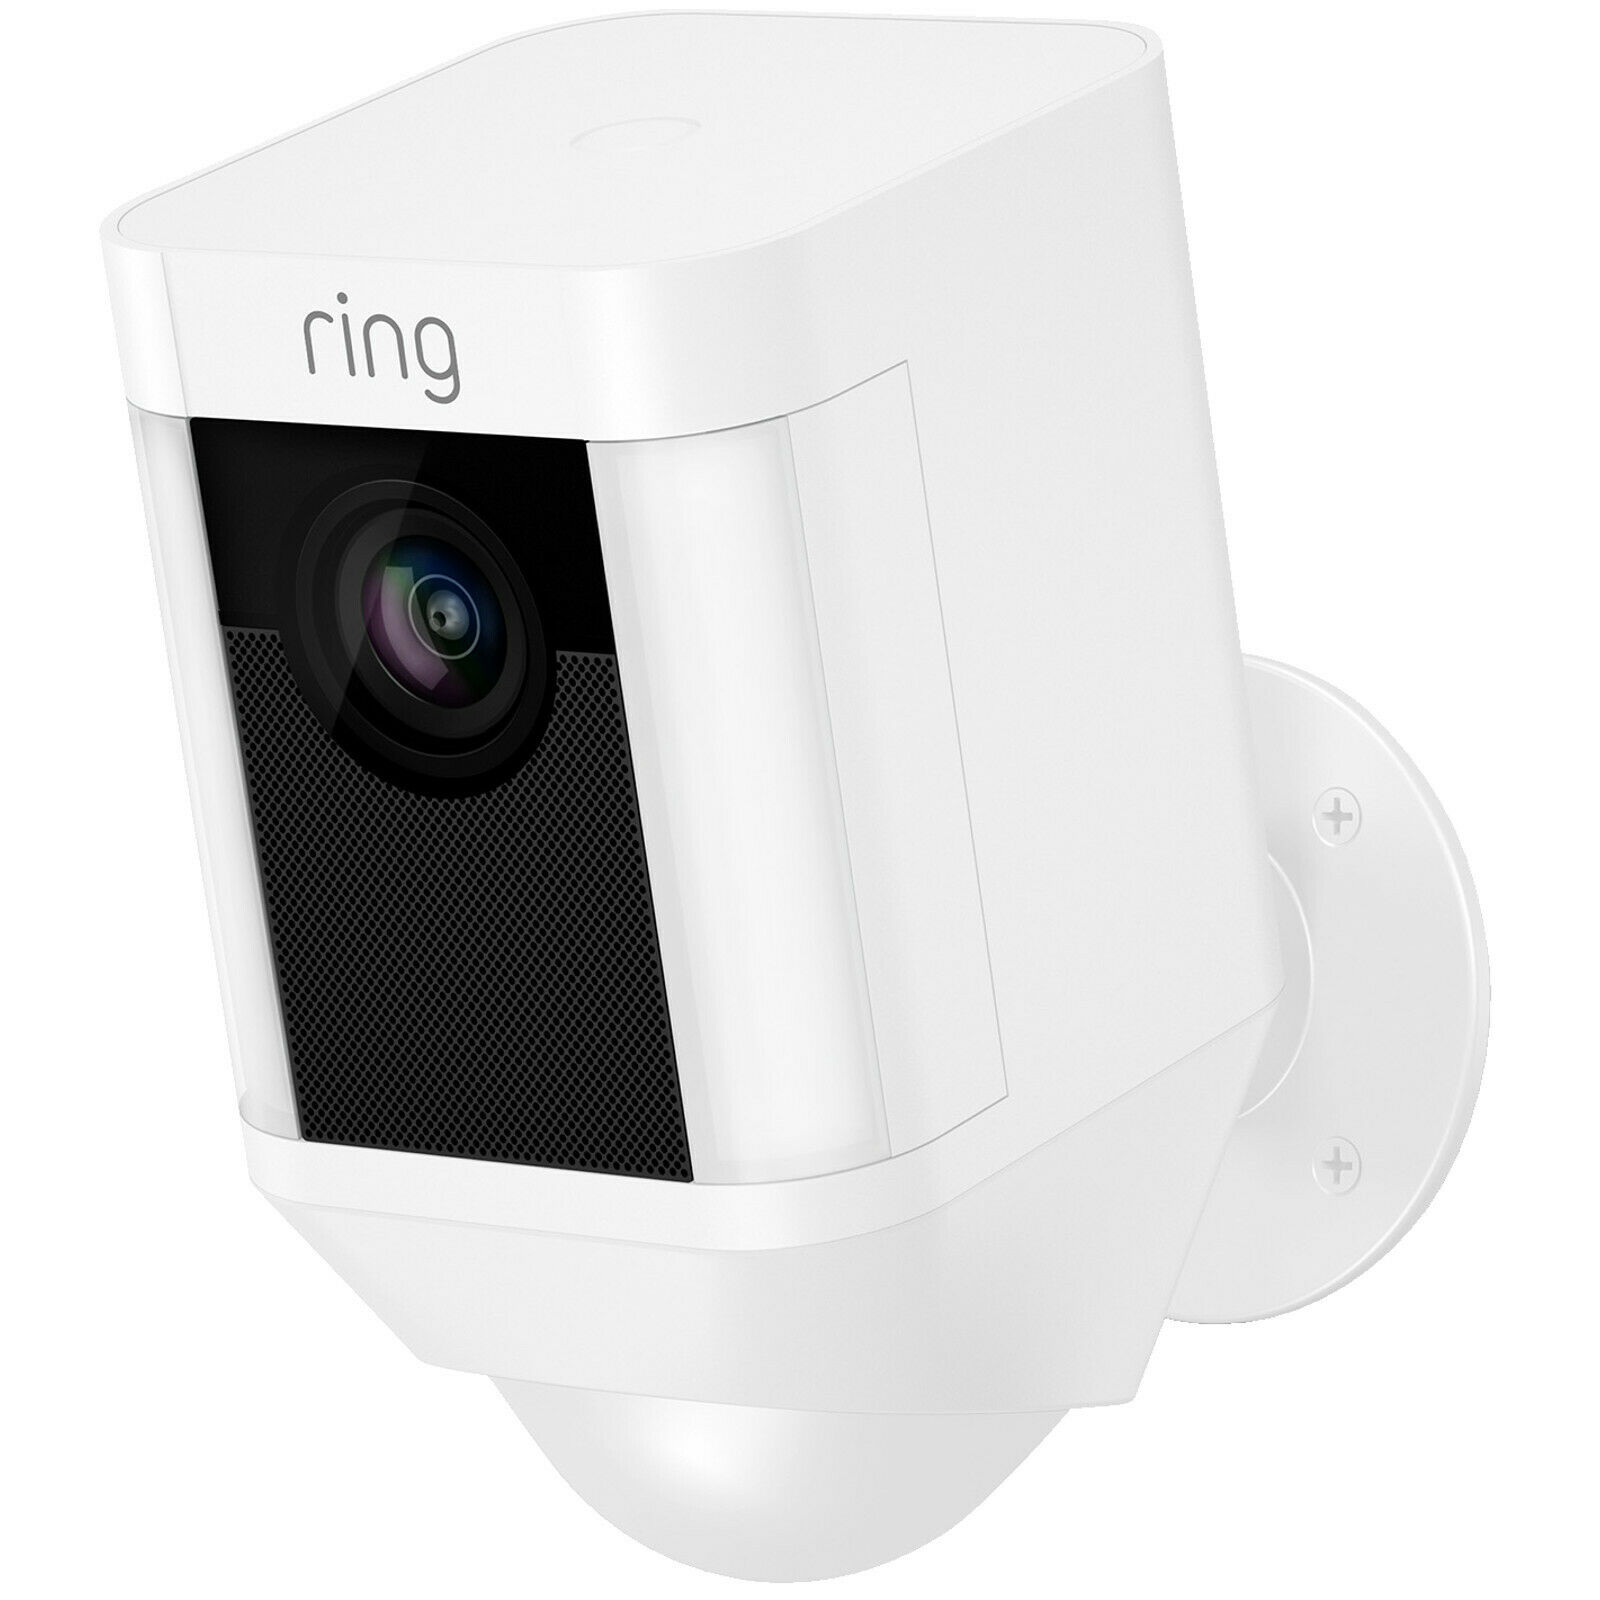 Bild zu Kabellose HD-Überwachungskamera Ring Spotlight für 149€ (Vergleich: 199€)